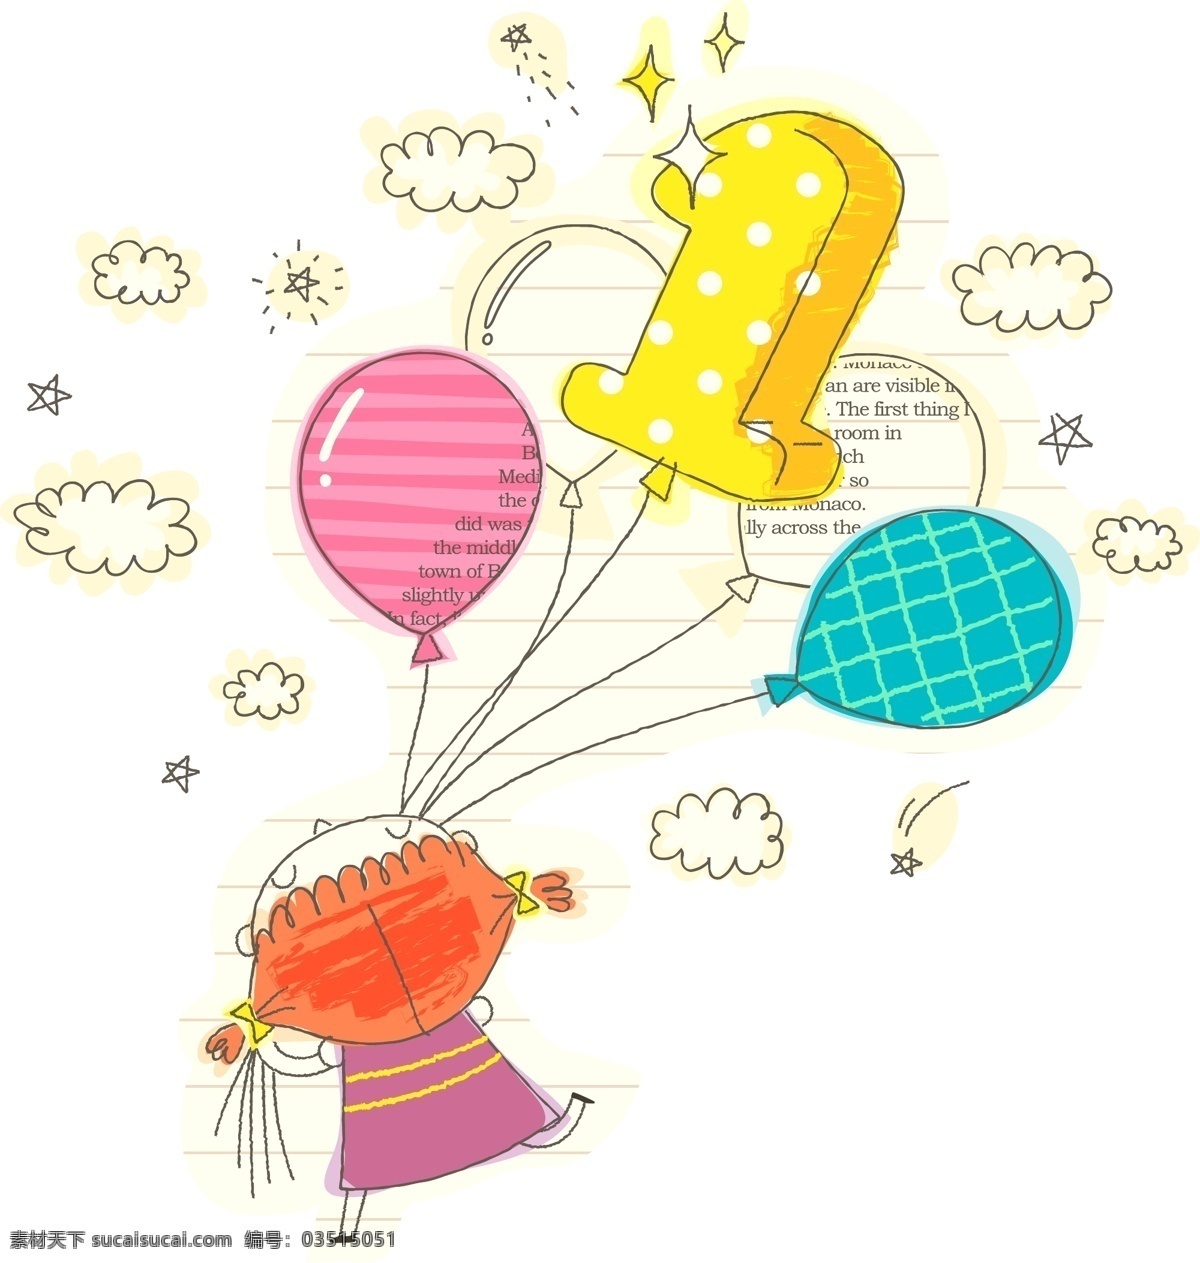 彩色气球 彩色 气球 模板下载 儿童 儿童绘画 儿童世界 画画 卡通插画 卡通人物 矢量 放气球 天真 快乐 铅笔画 梦想天空 铅笔彩色画 幼儿绘画 卡通设计 插画集